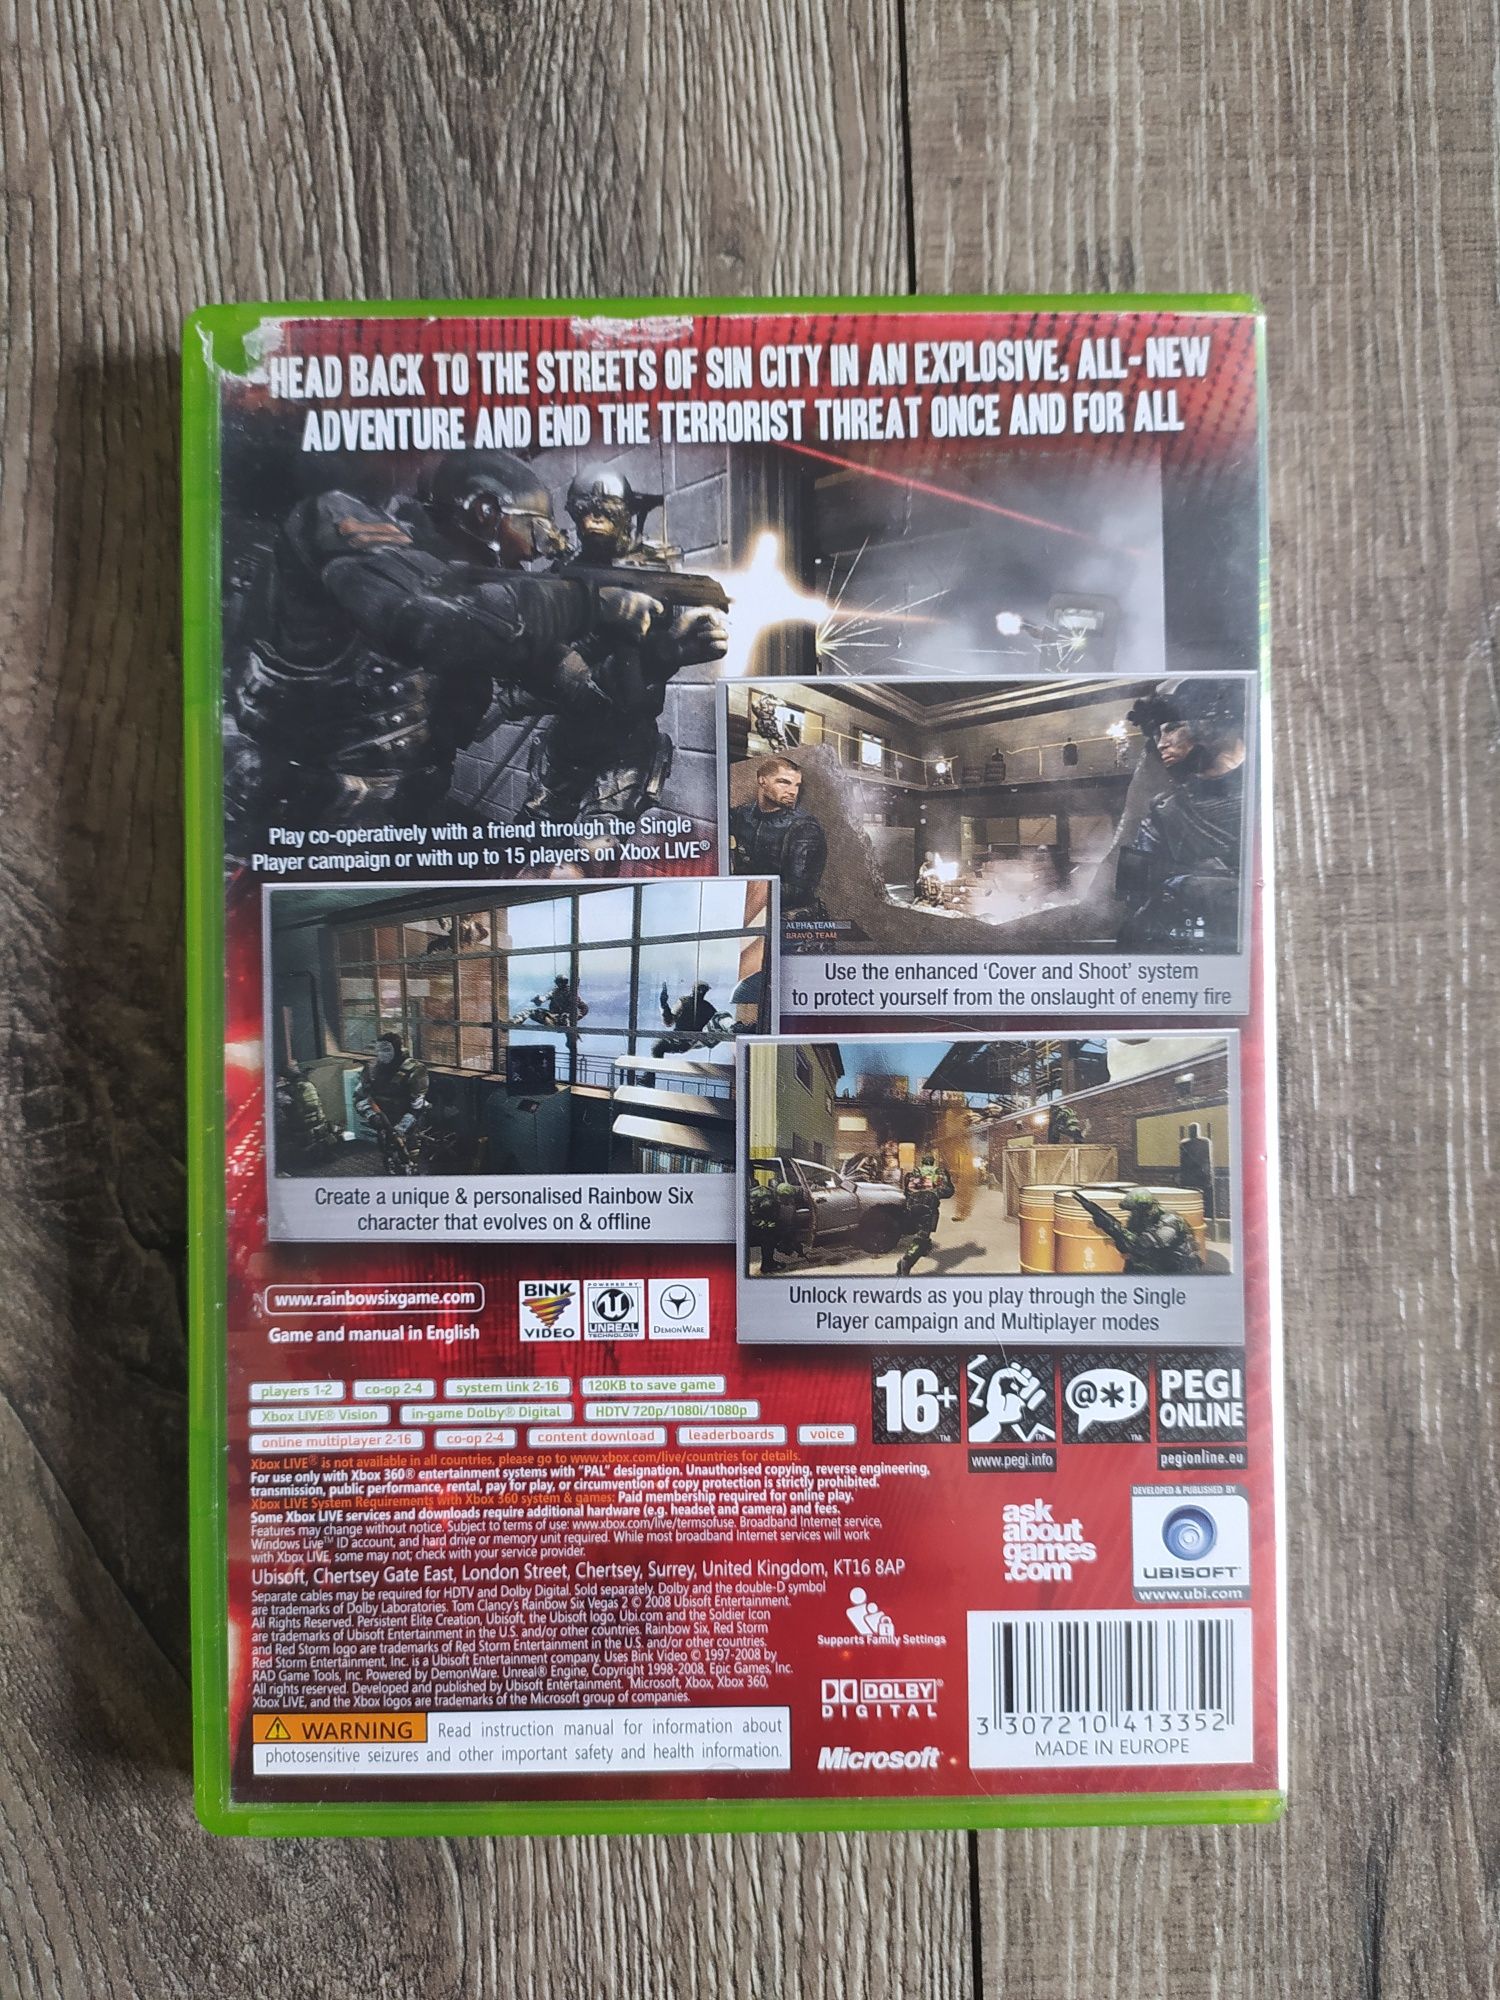 Gra Xbox 360 Tom Clancy's Rainbow Six Vegas 2 Wysyłka